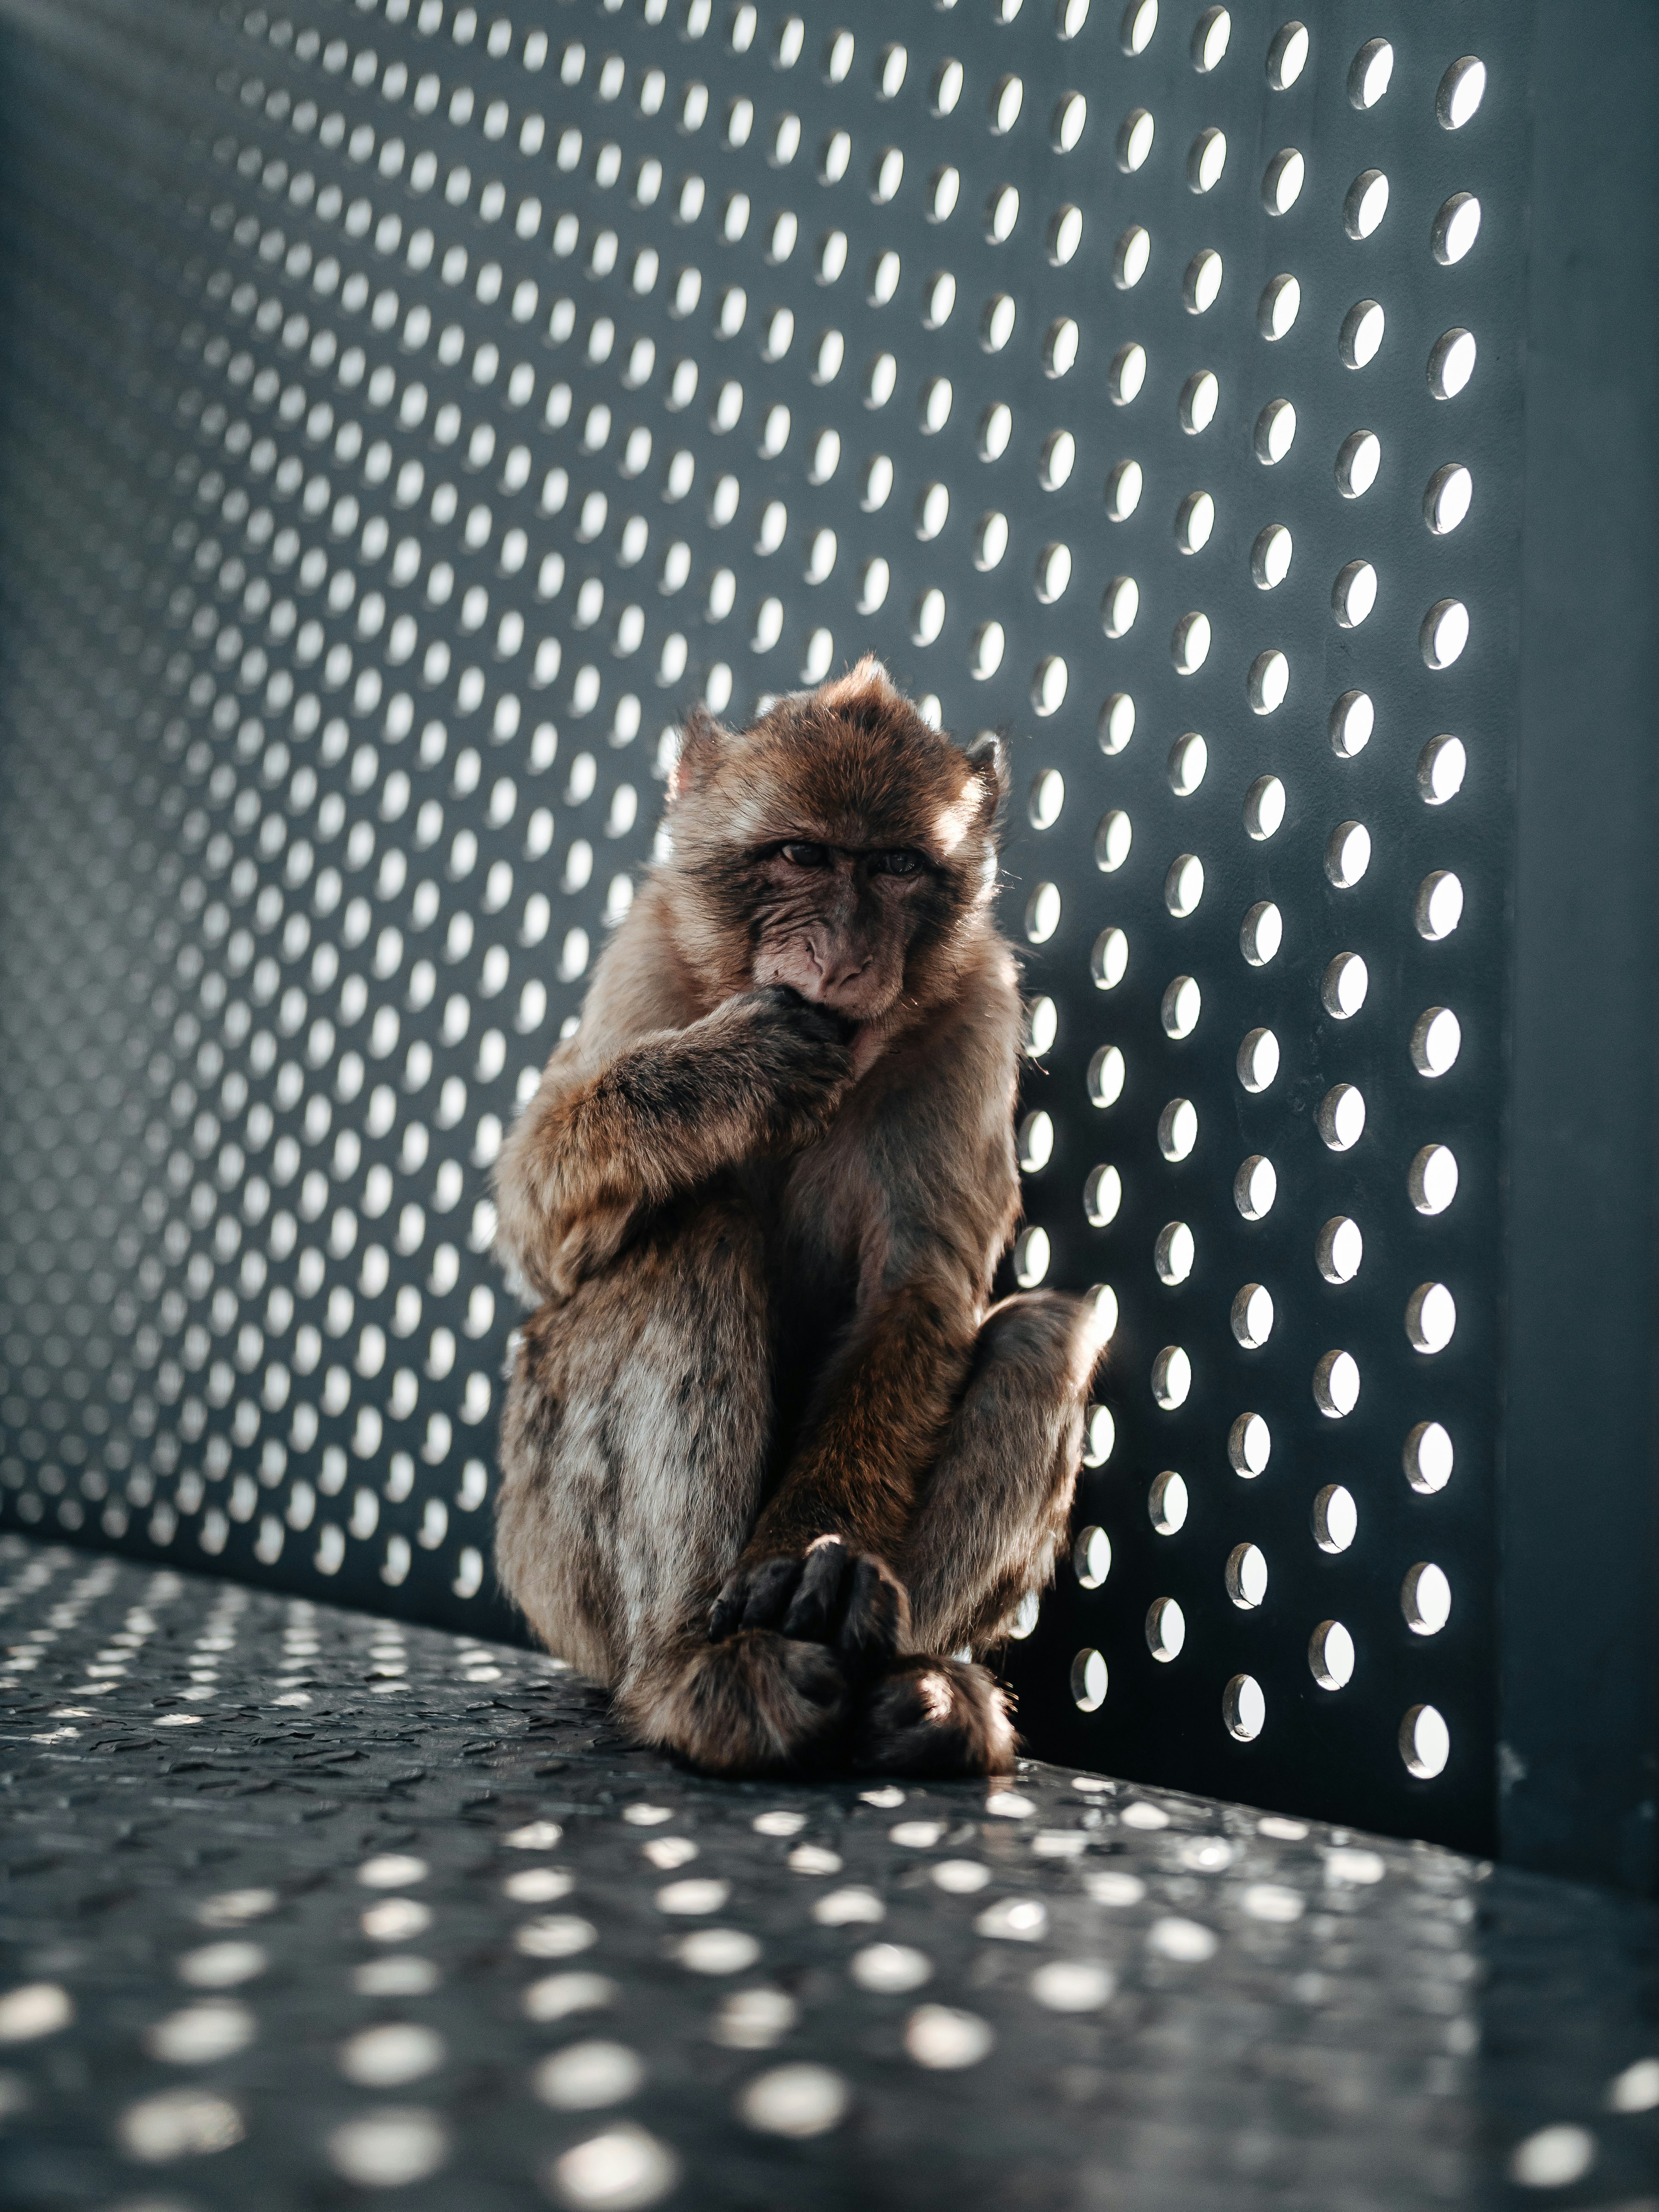 brown monkey on black metal fence